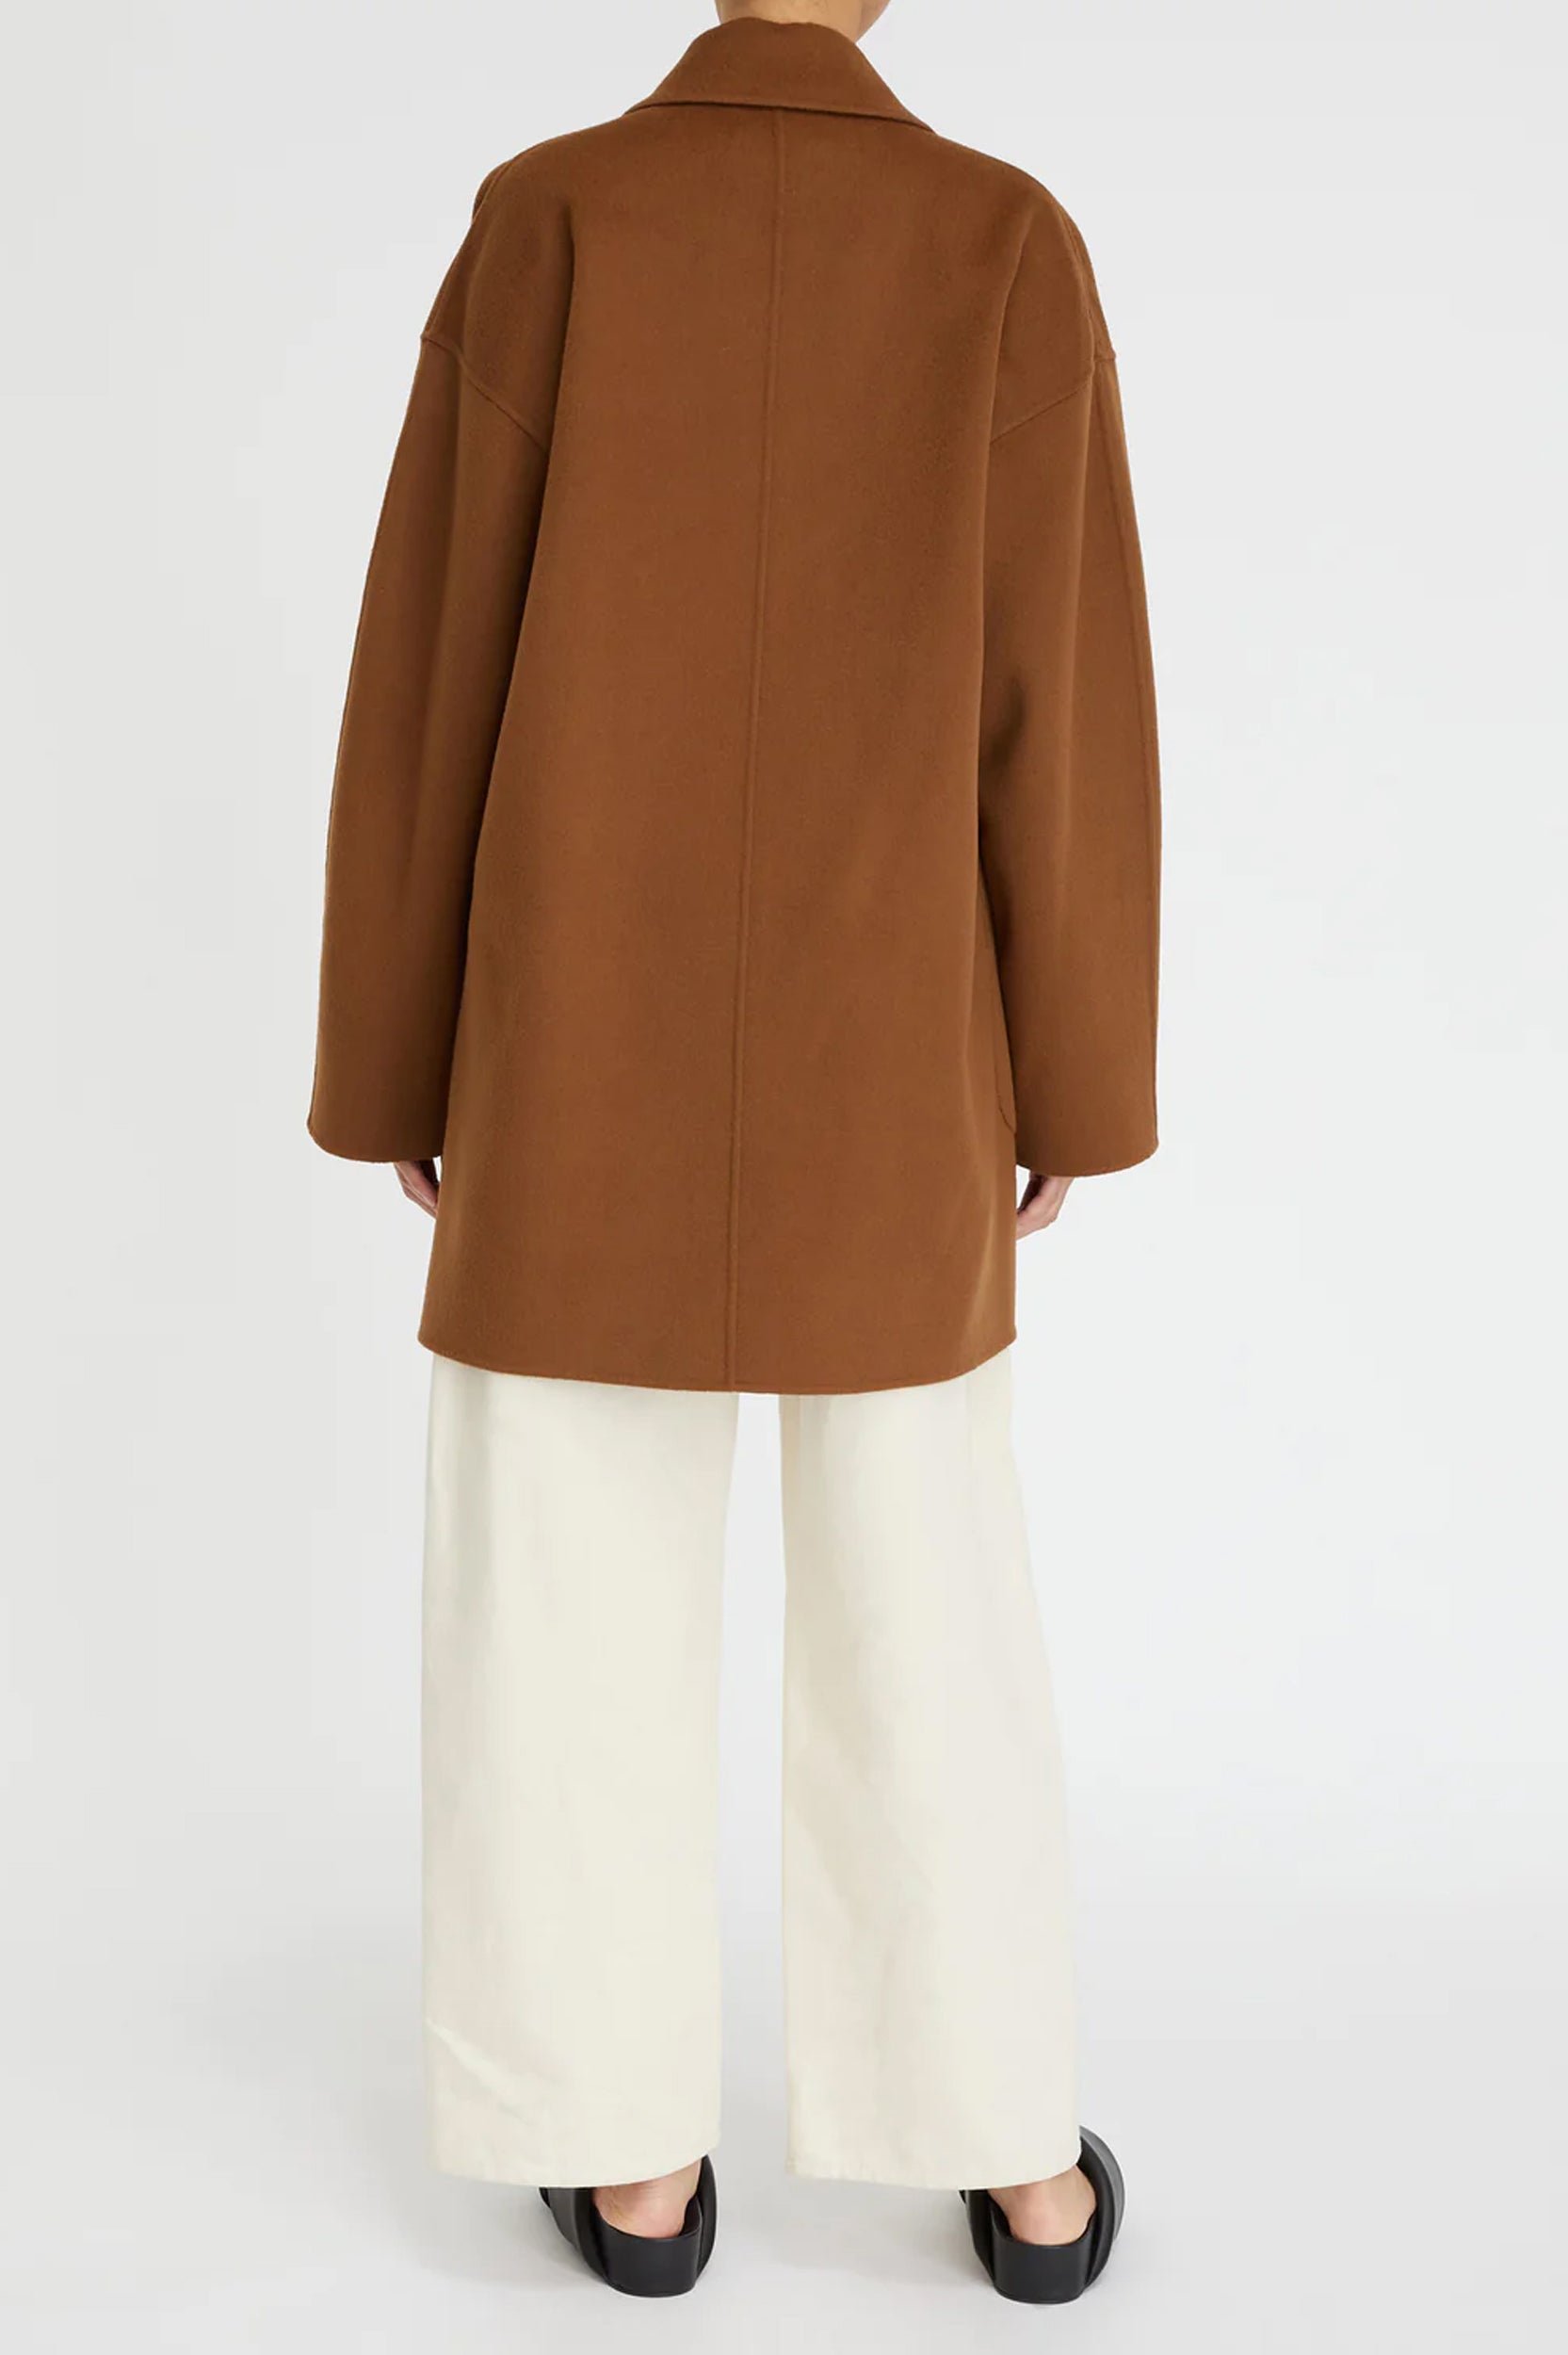 Florentine Cashmere Pea Coat in Camel